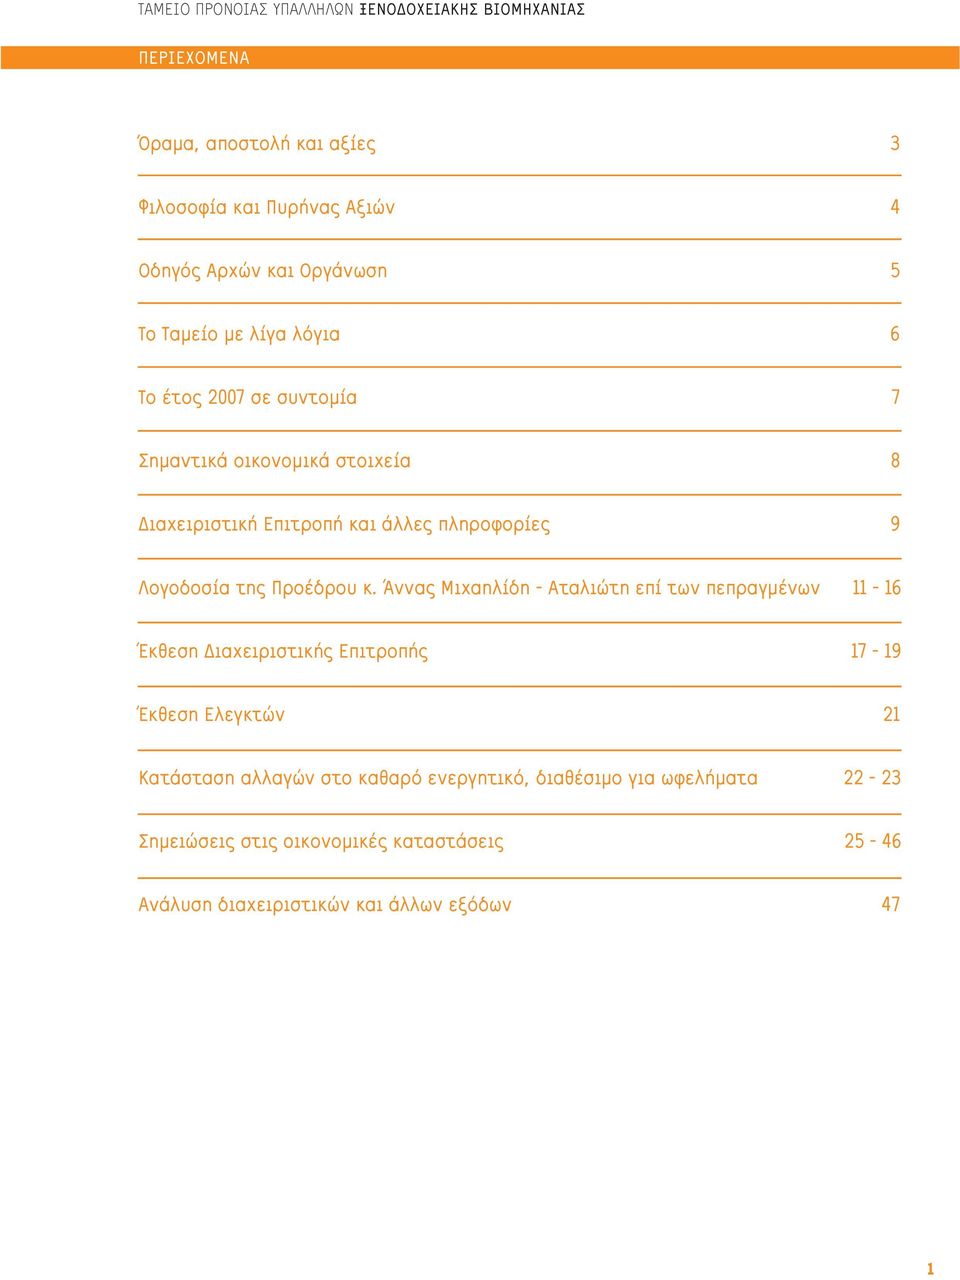 Άννας Μιχαηλίδη - Αταλιώτη επί των πεπραγμένων 11-16 Έκθεση Διαχειριστικής Επιτροπής 17-19 Έκθεση Ελεγκτών 21 Κατάσταση αλλαγών στο